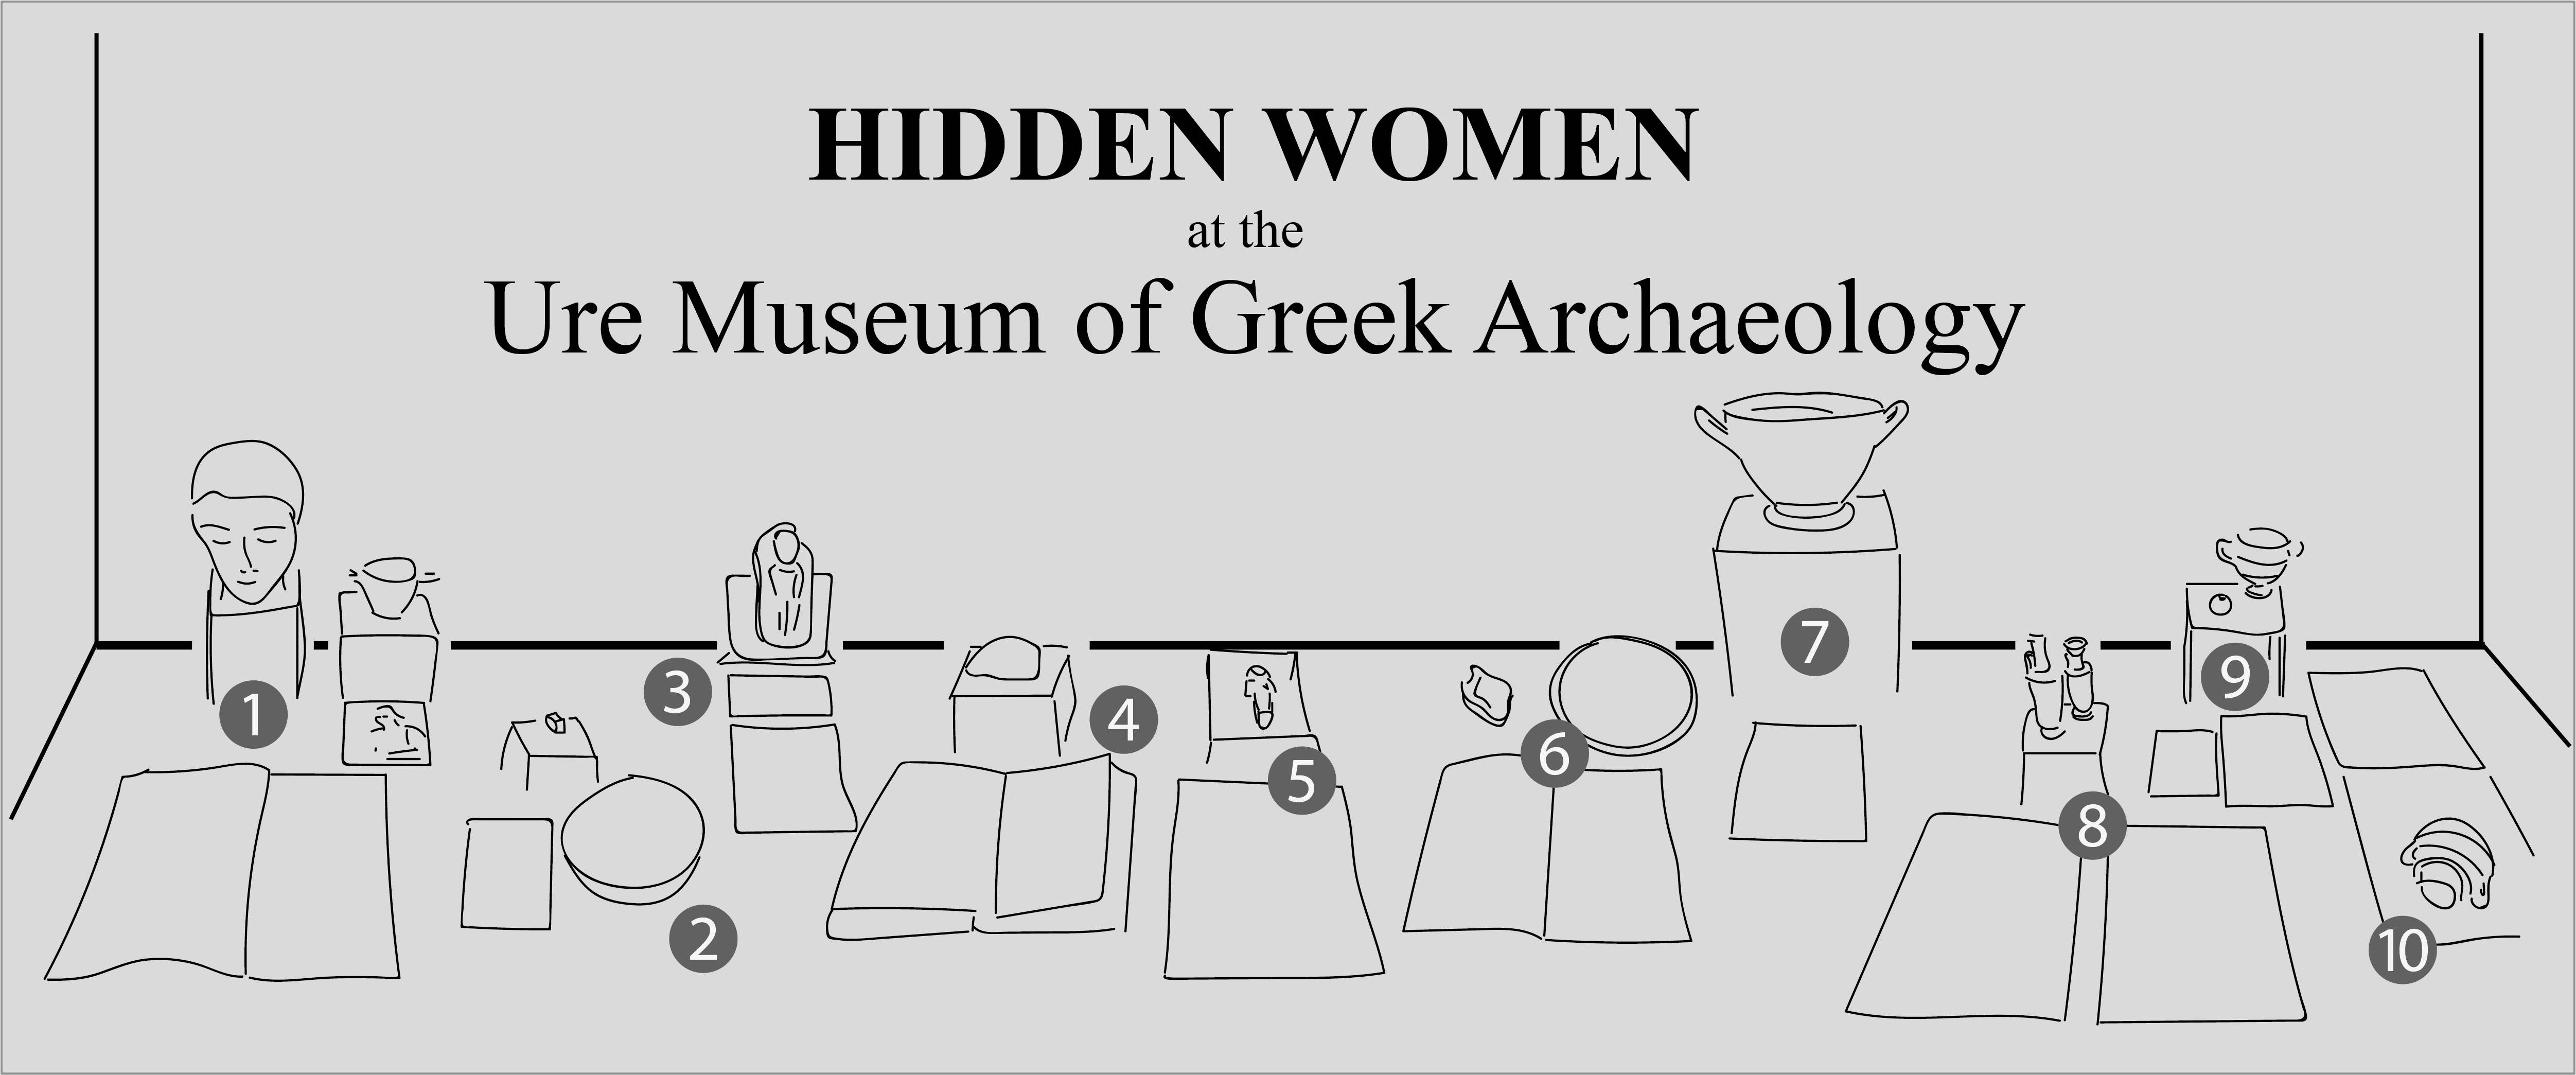 “Hidden Women in the Archive” Digital Exhibition